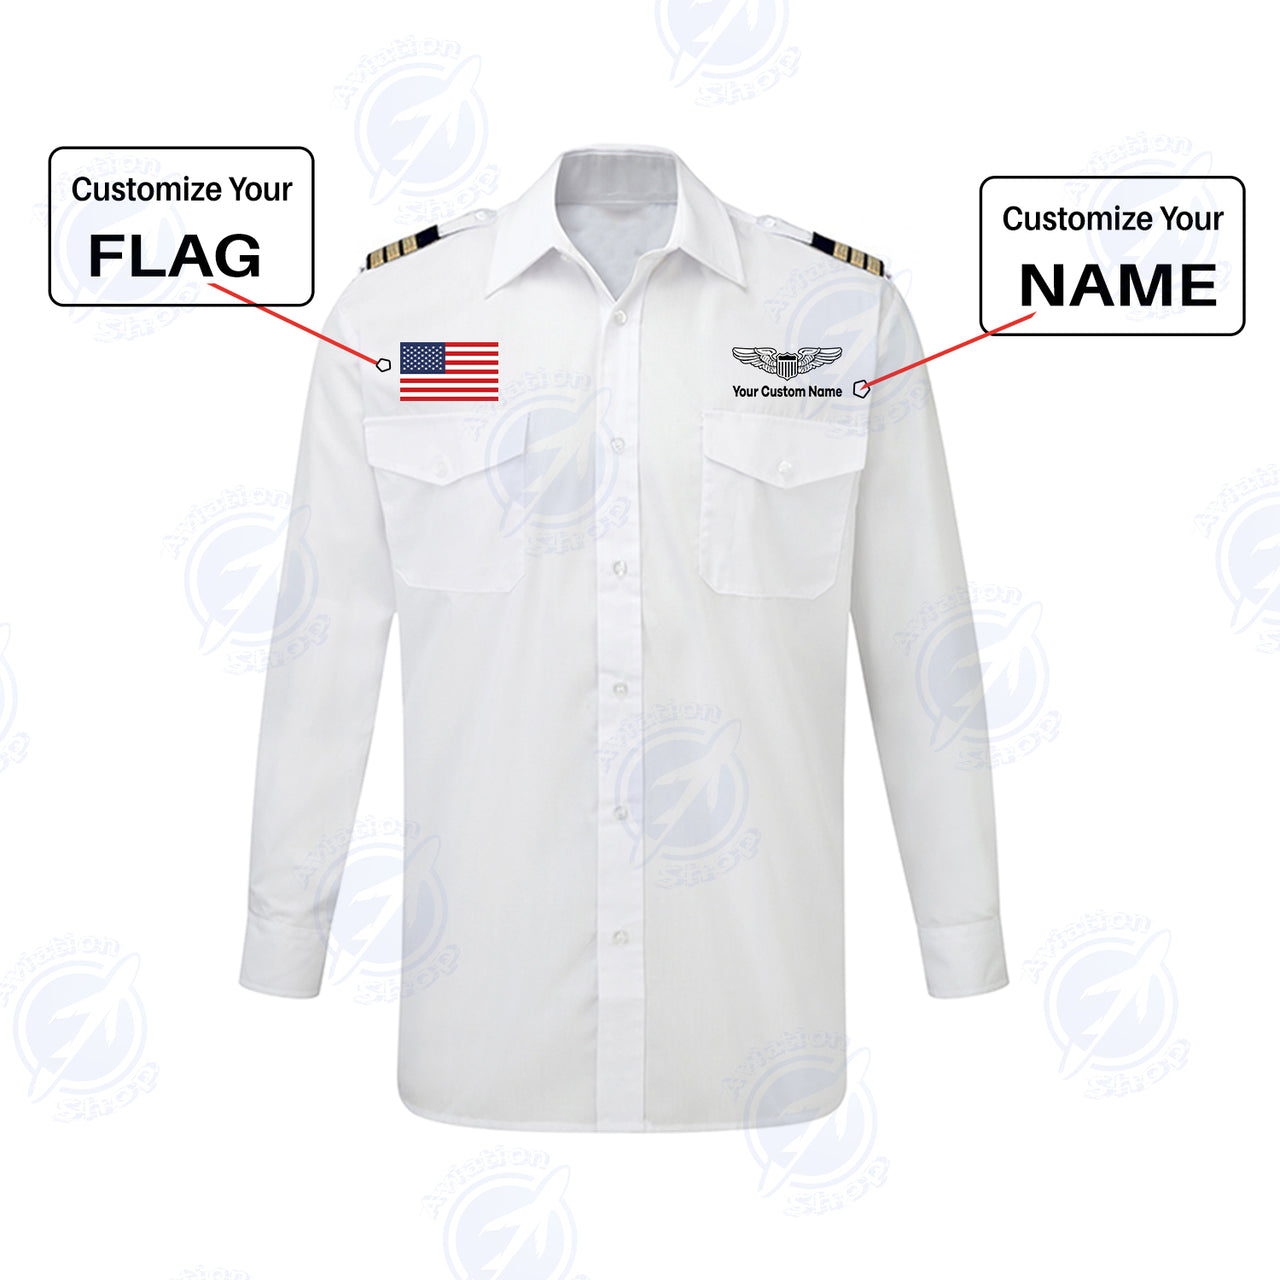 Custom Flag & Name with EPAULETTES (Military Badge) Designed Long Sleeve Pilot Shirts